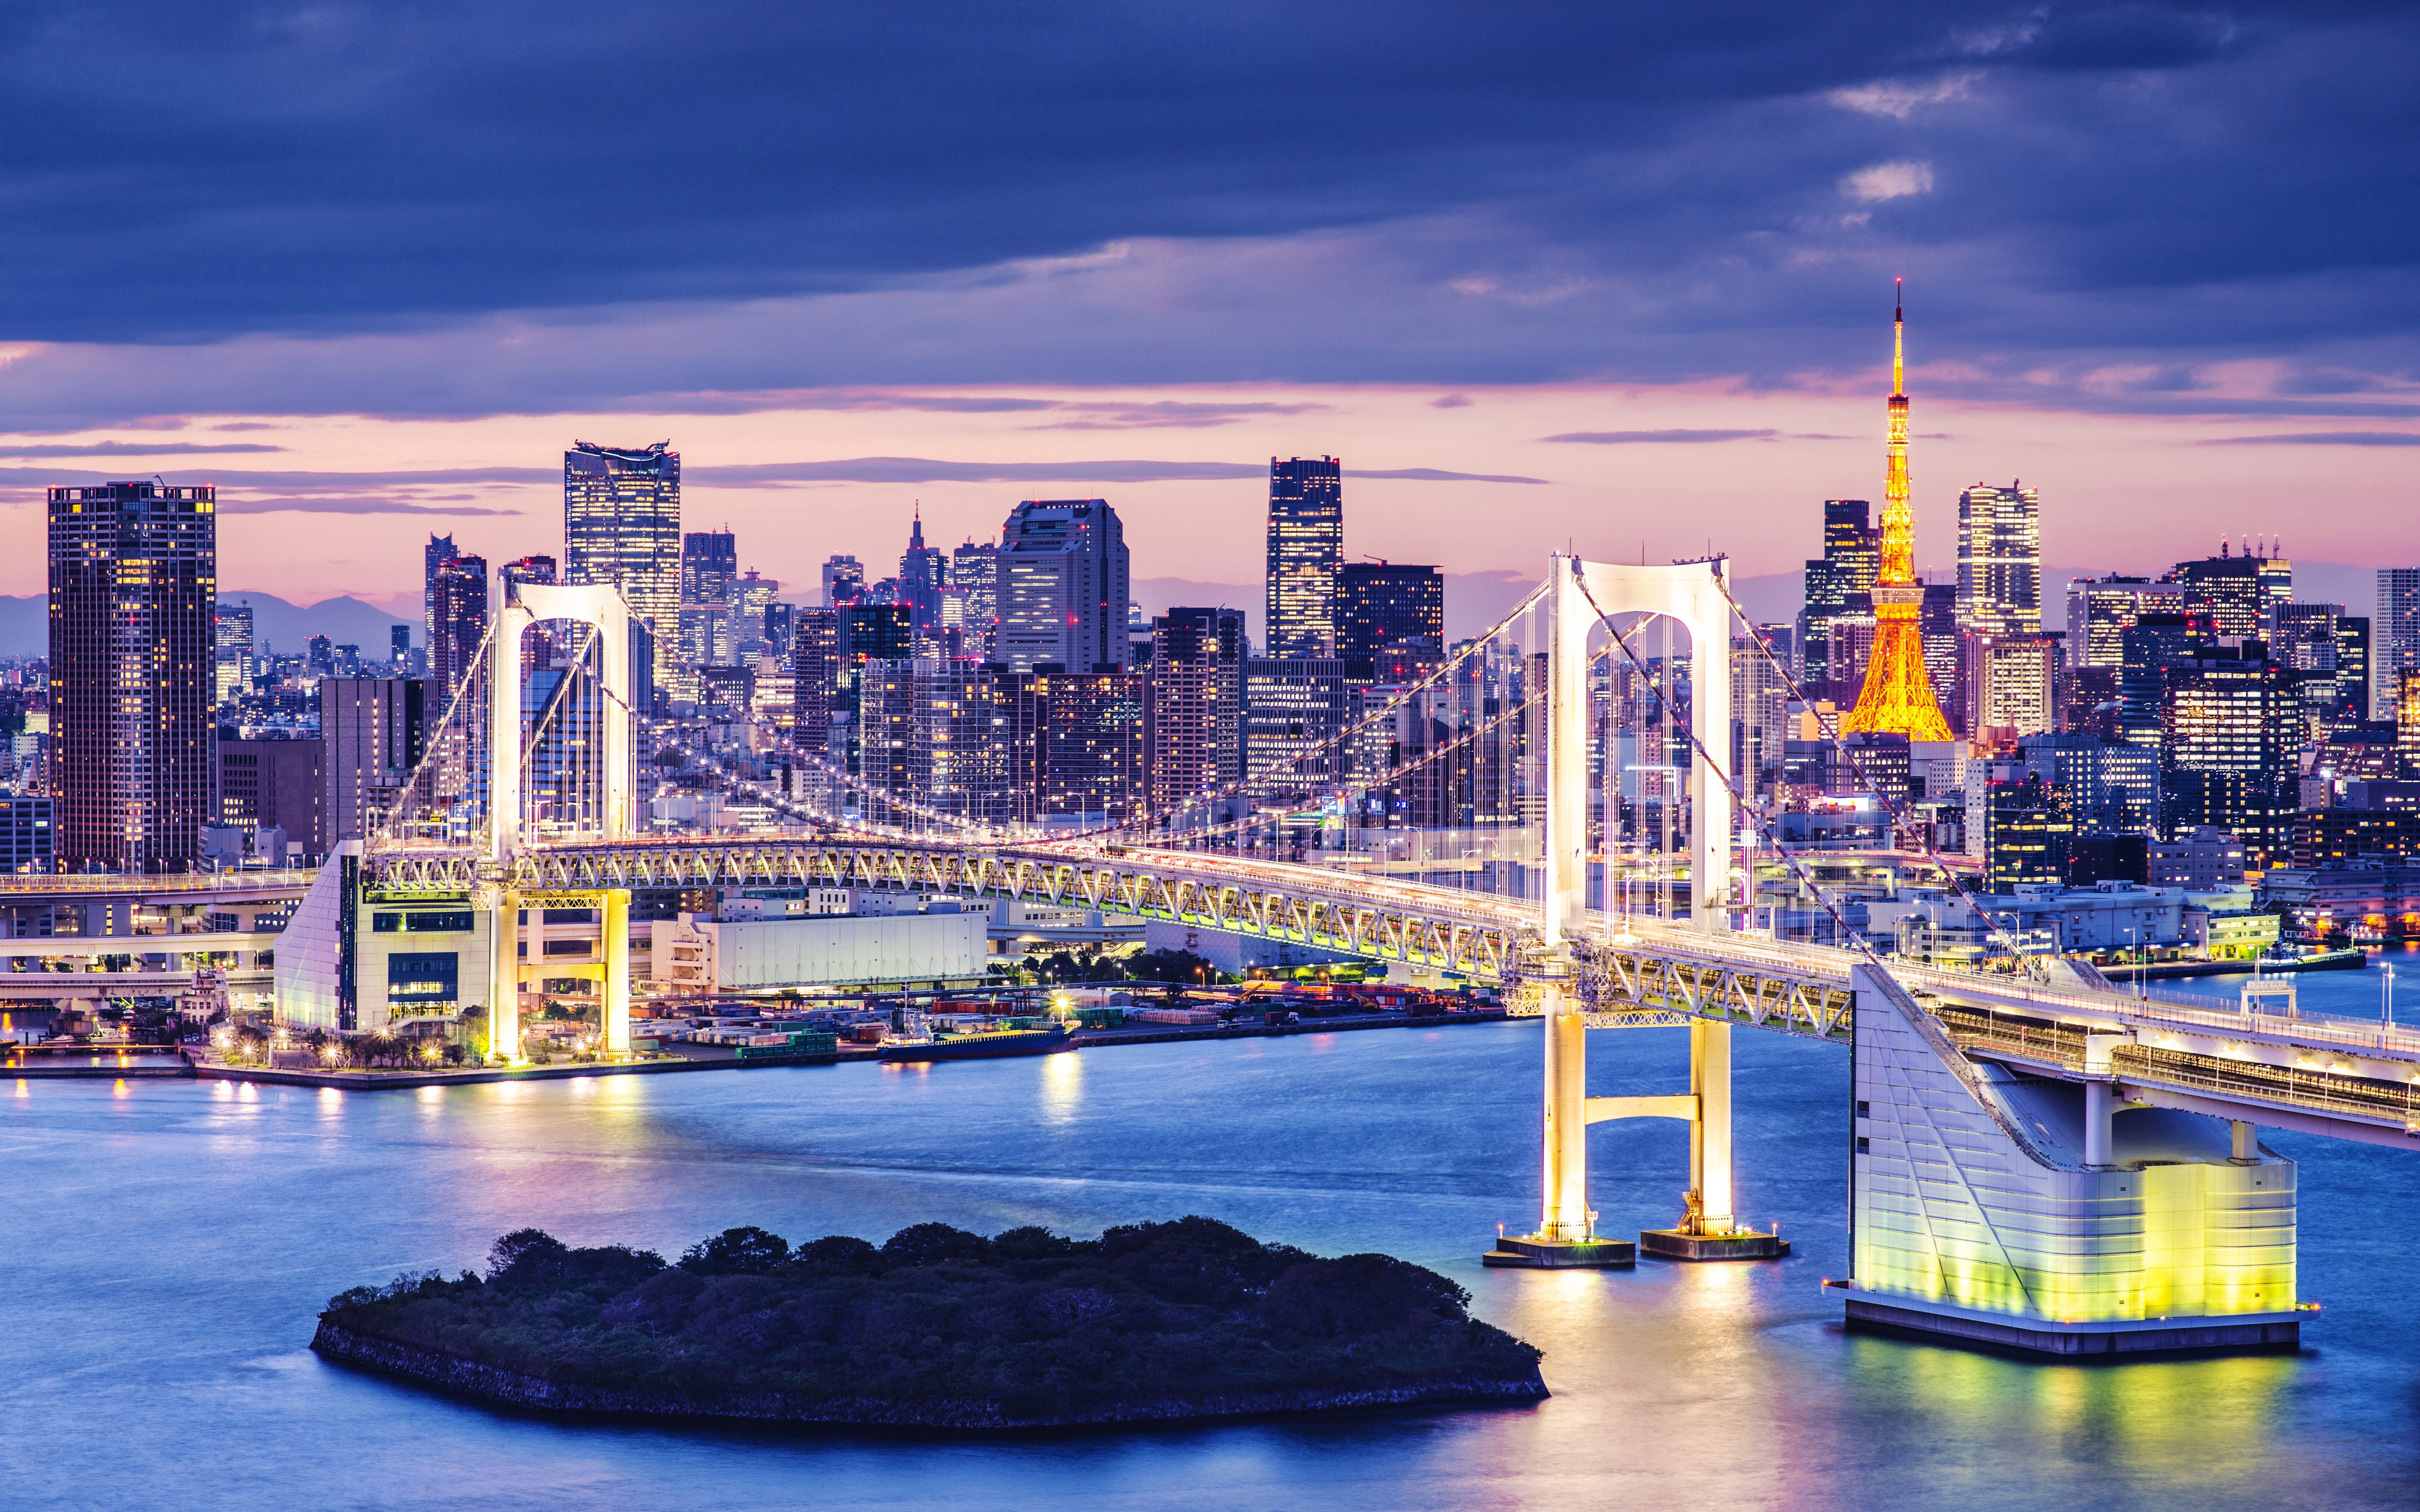 HD wallpaper, City Lights, Tokyo, Japan, Cityscape, Twilight, Illuminated, 5K, Rainbow Bridge